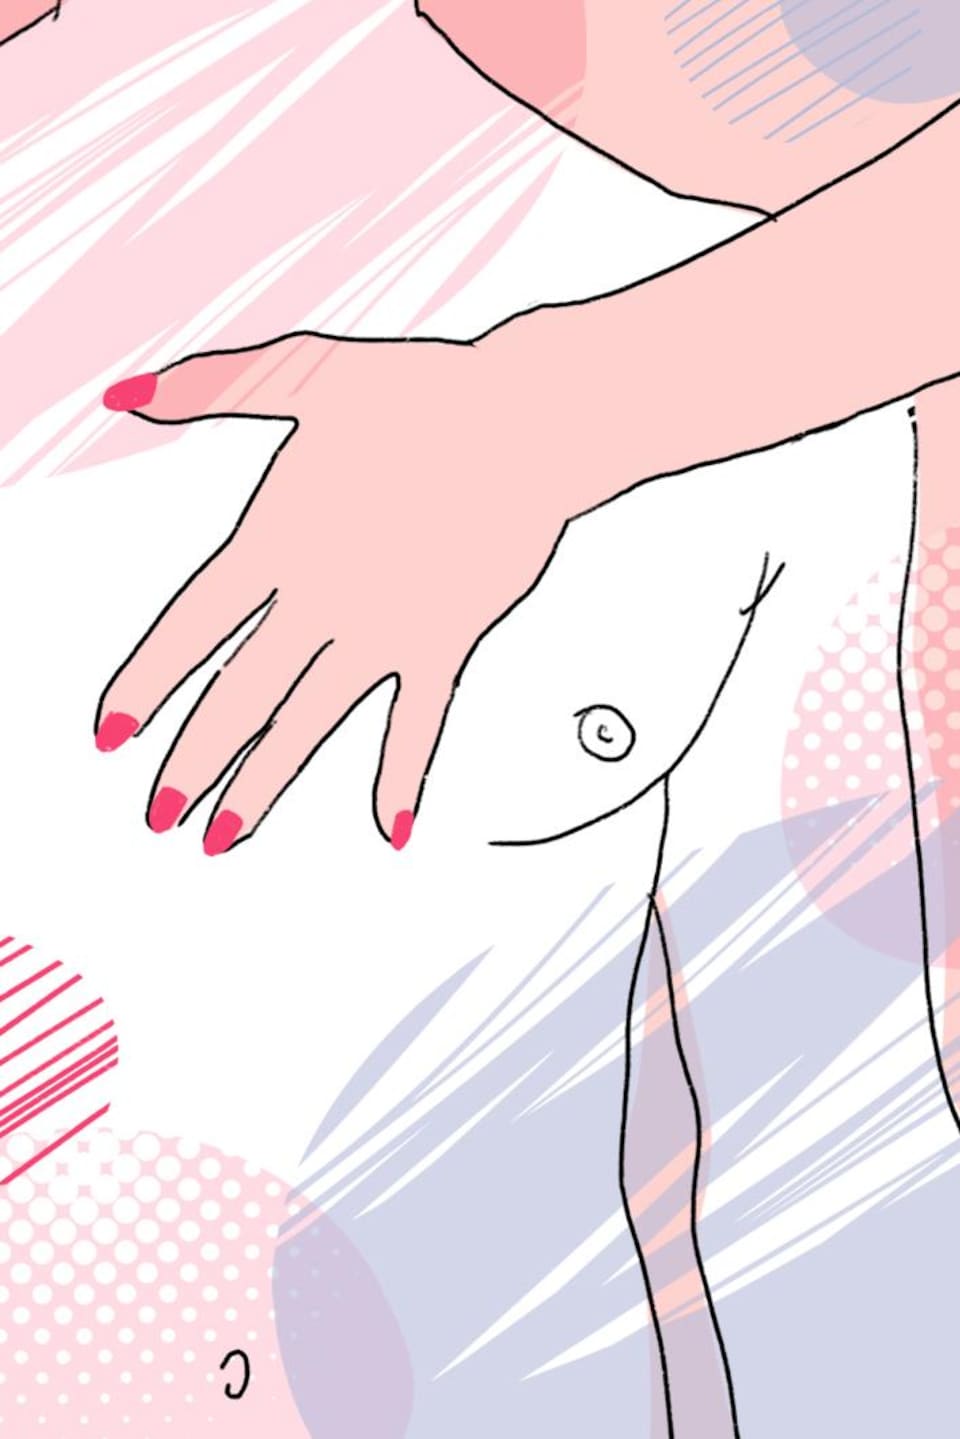 Le dessin d'une main féminine qui caresse le torse d'un homme.